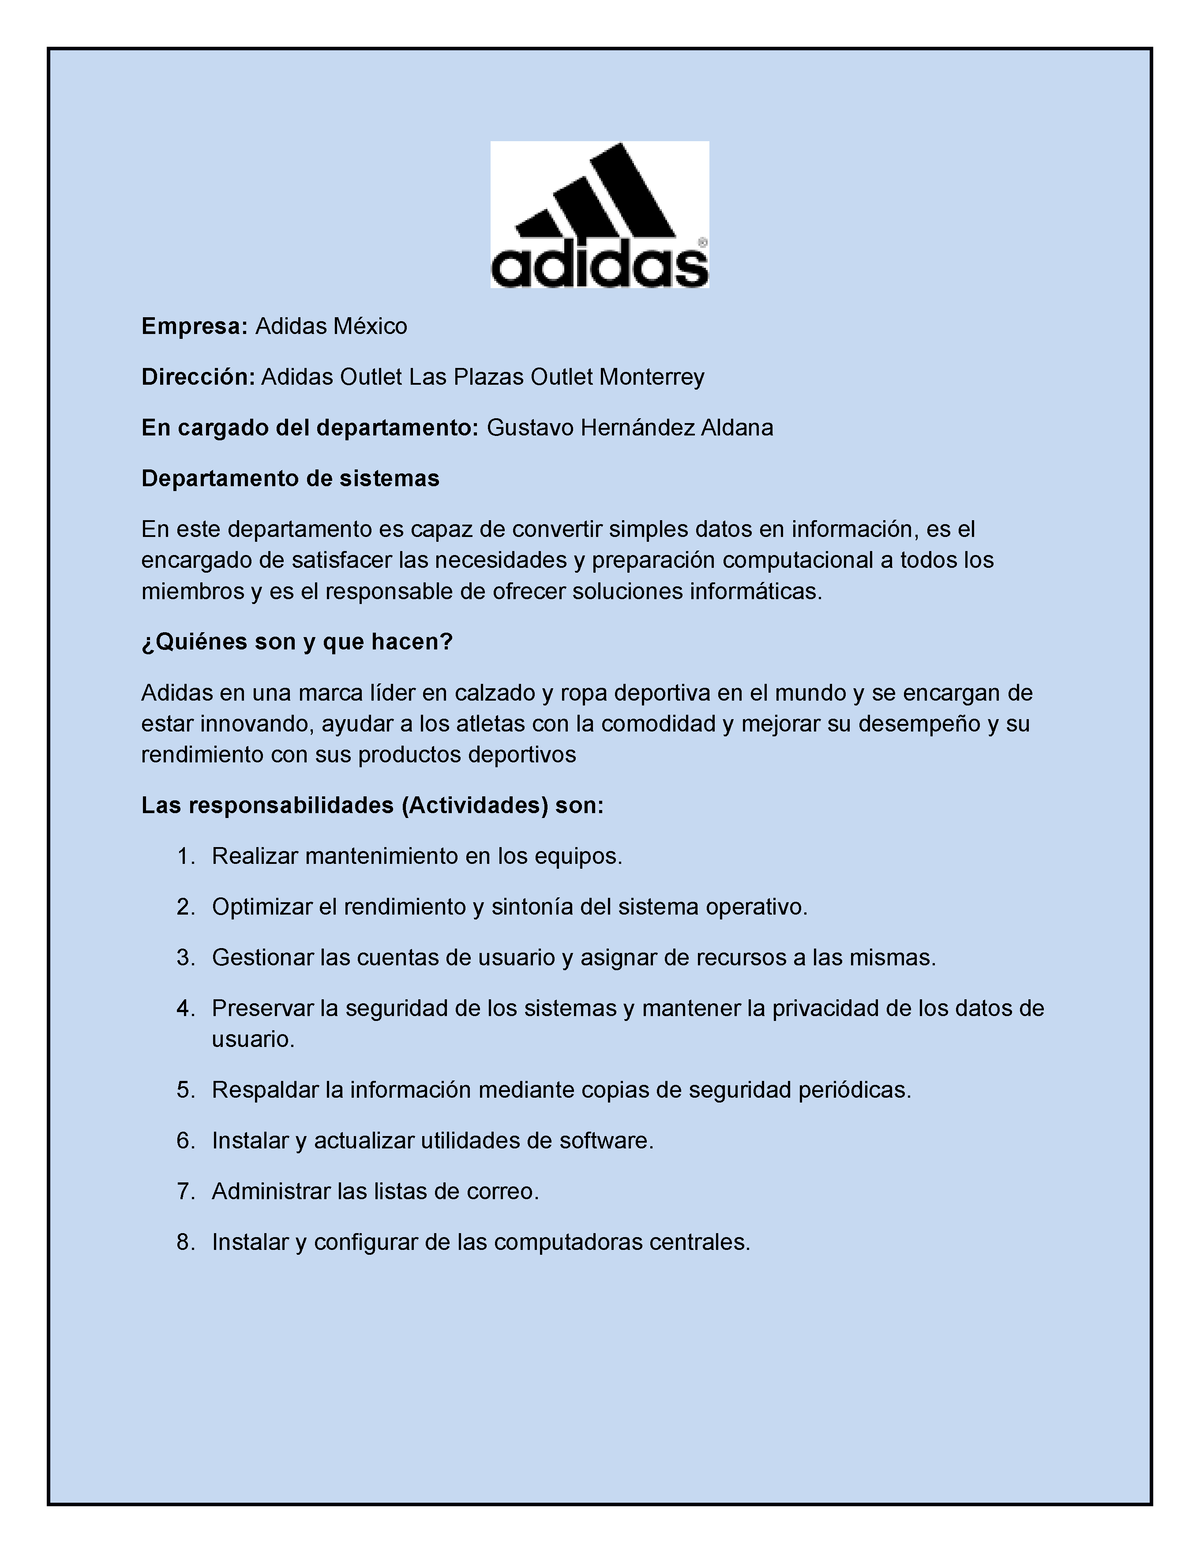 histórico Administración diario Empresa Adidas - Completo - Empresa: Adidas México Dirección: Adidas Outlet  Las Plazas Outlet - Studocu